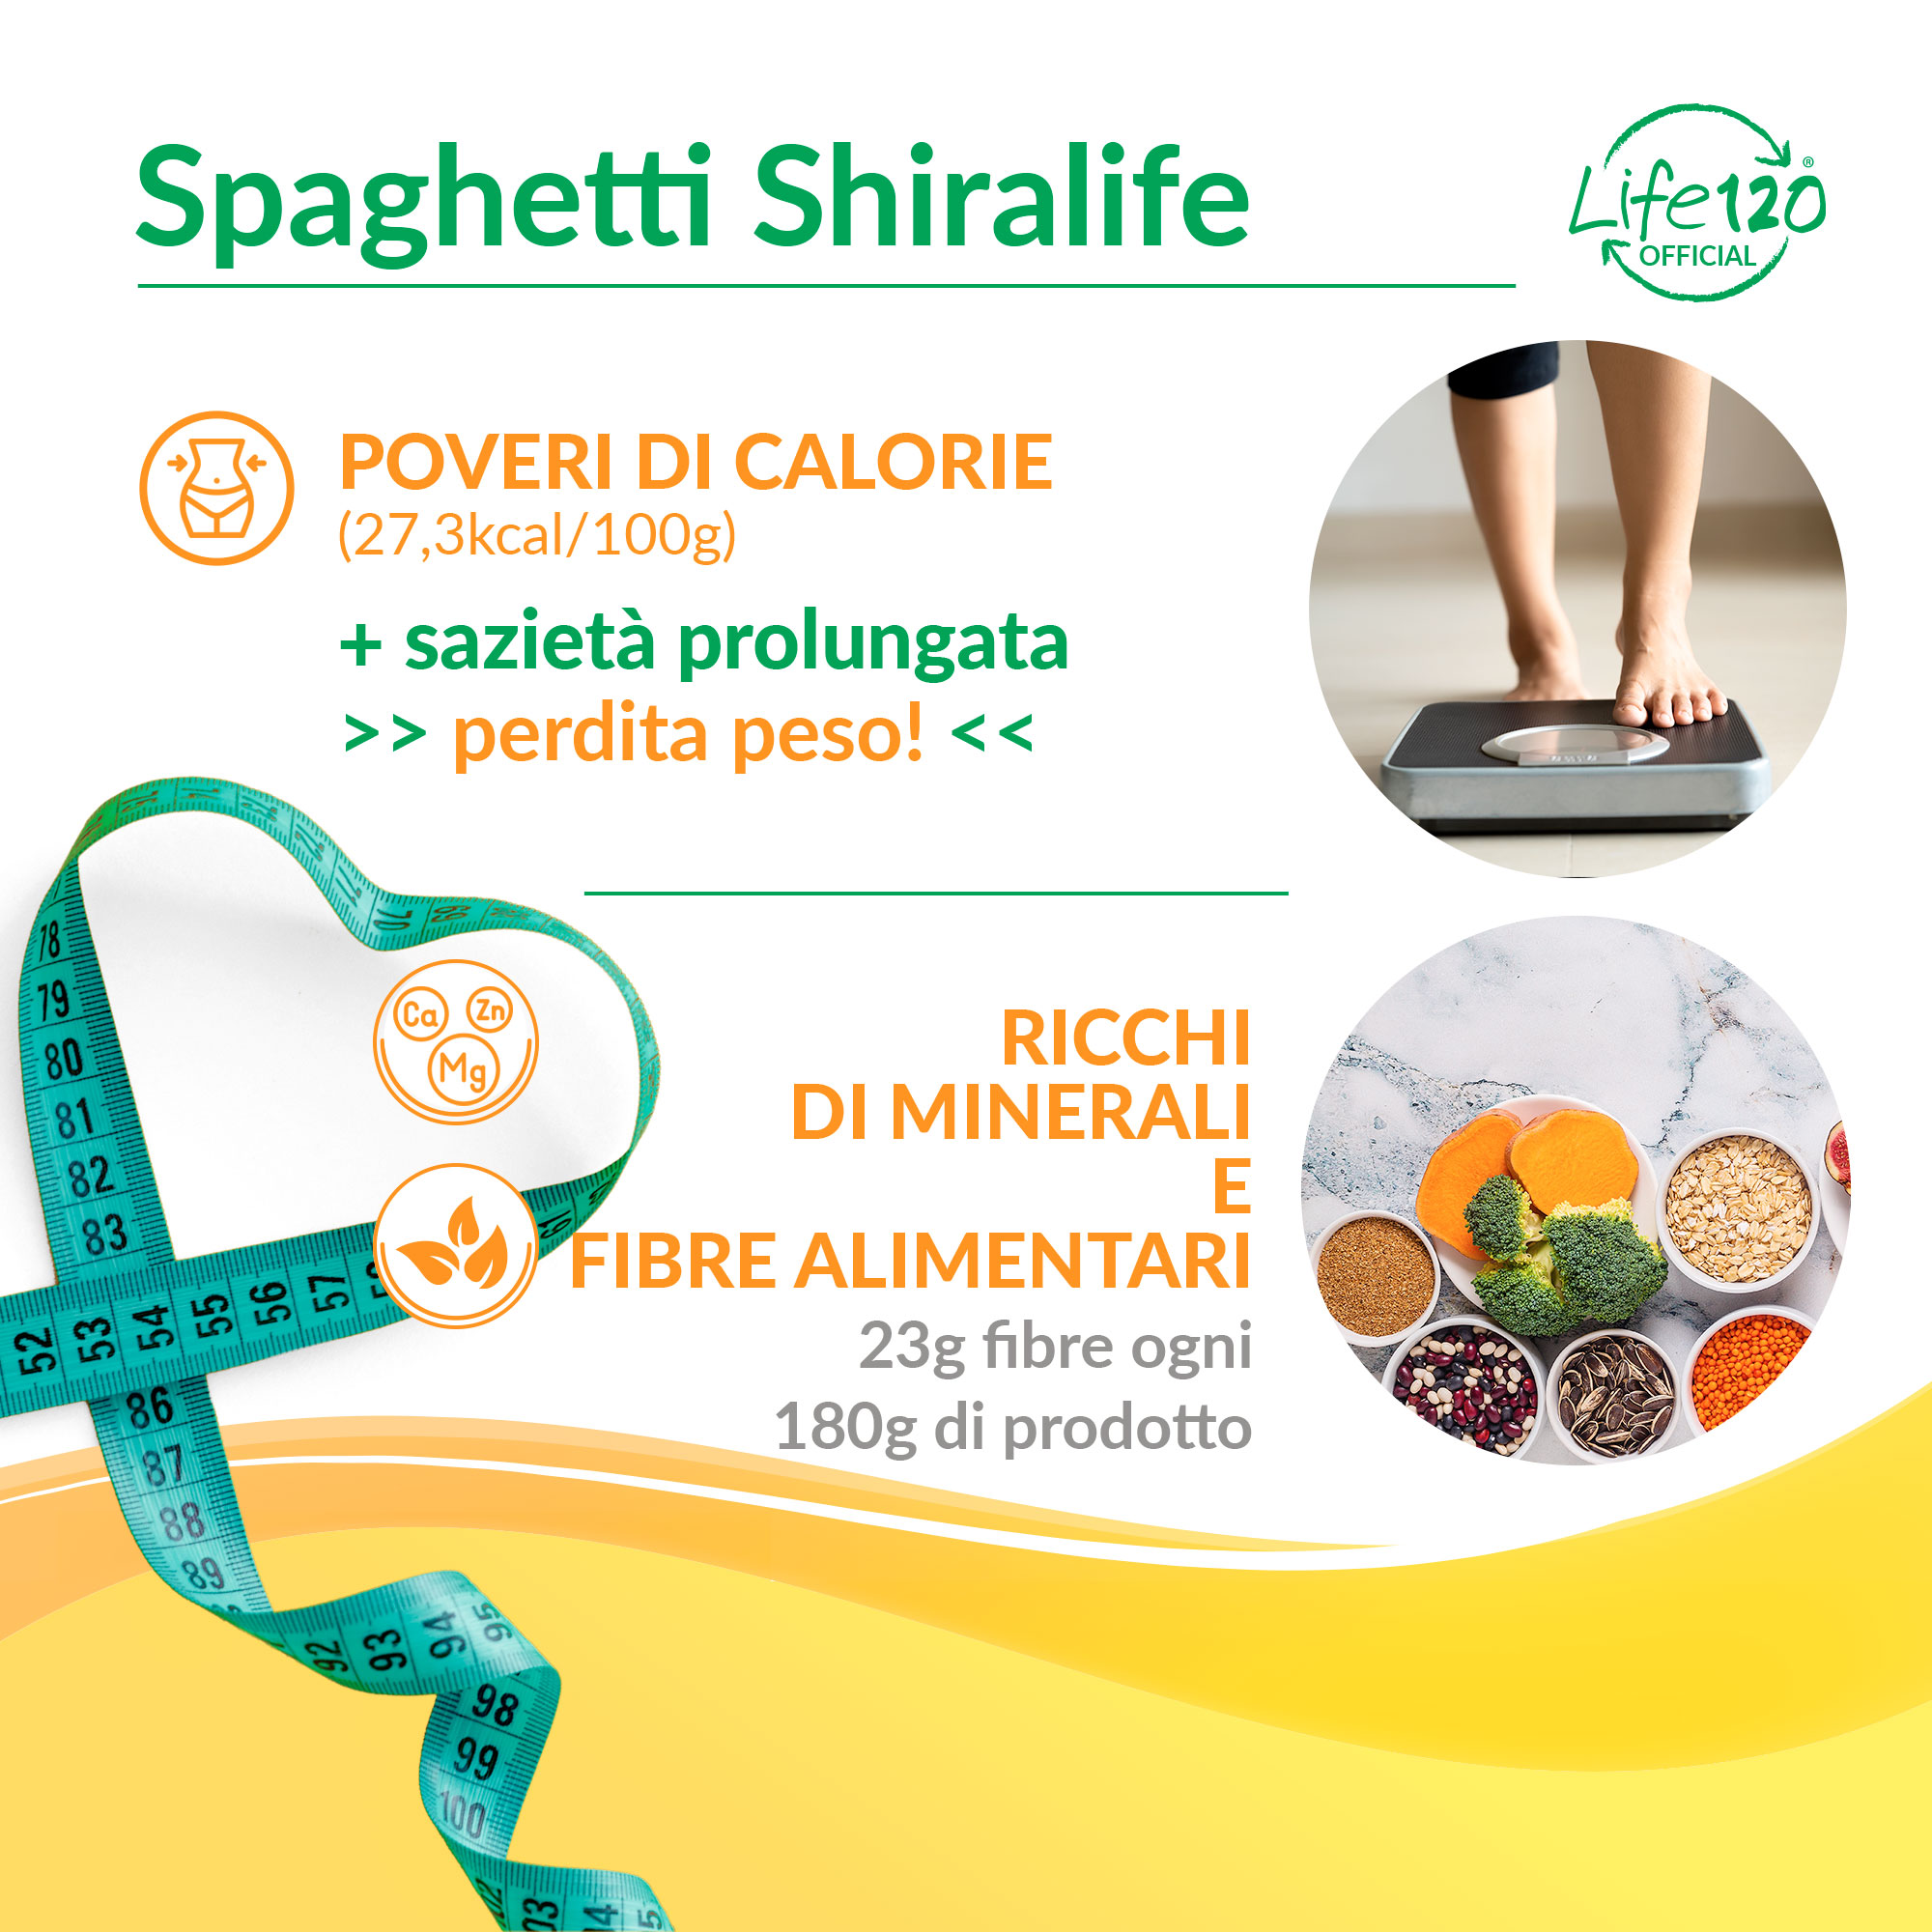 Spaghetti Shiralife 600 g